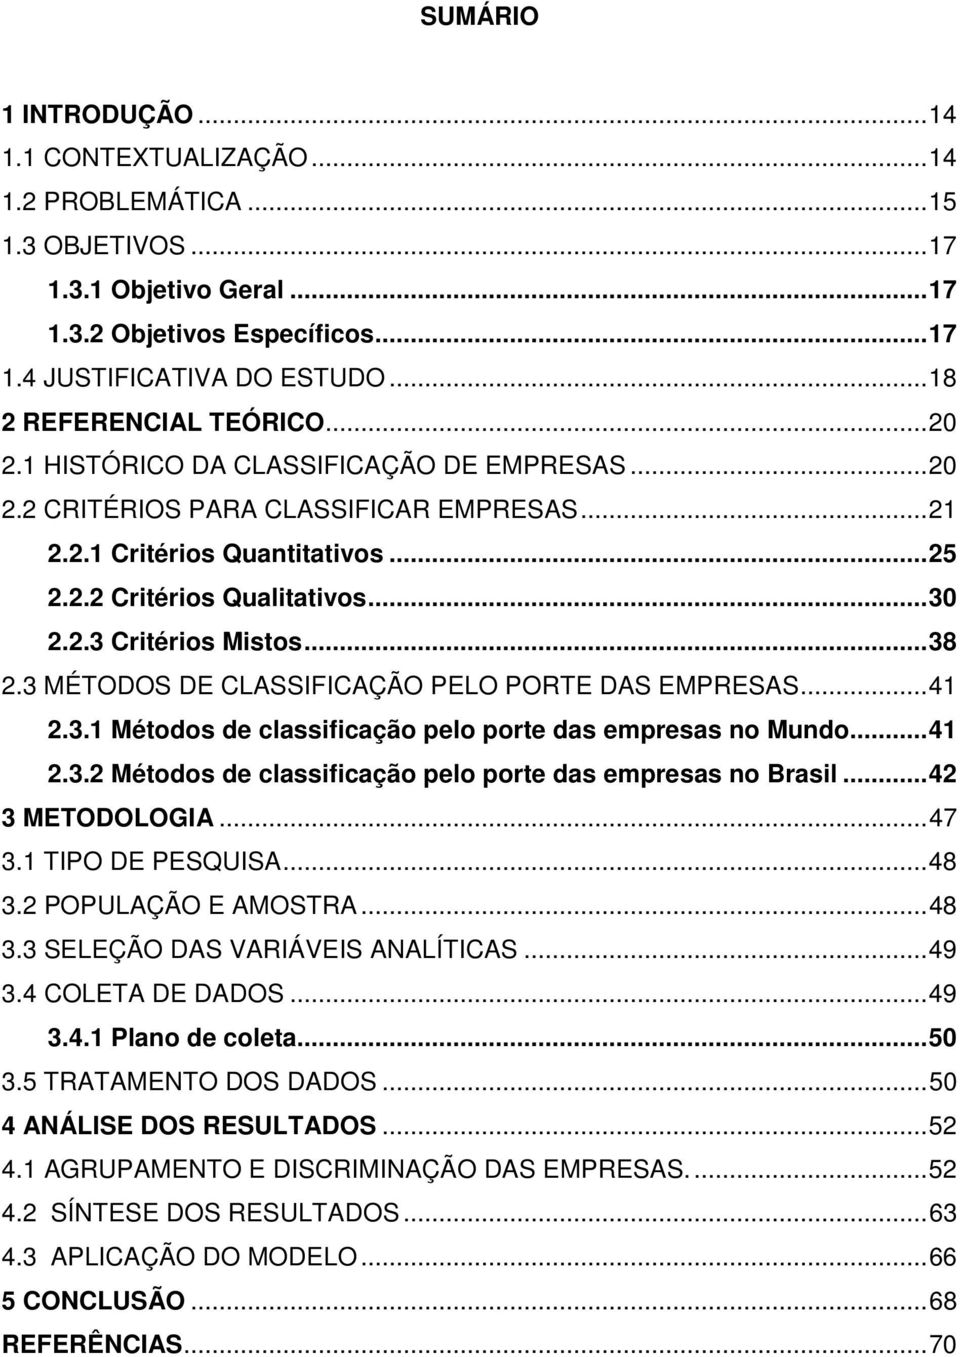 2.3 Critérios Mistos... 38 2.3 MÉTODOS DE CLASSIFICAÇÃO PELO PORTE DAS EMPRESAS... 41 2.3.1 Métodos de classificação pelo porte das empresas no Mundo... 41 2.3.2 Métodos de classificação pelo porte das empresas no Brasil.